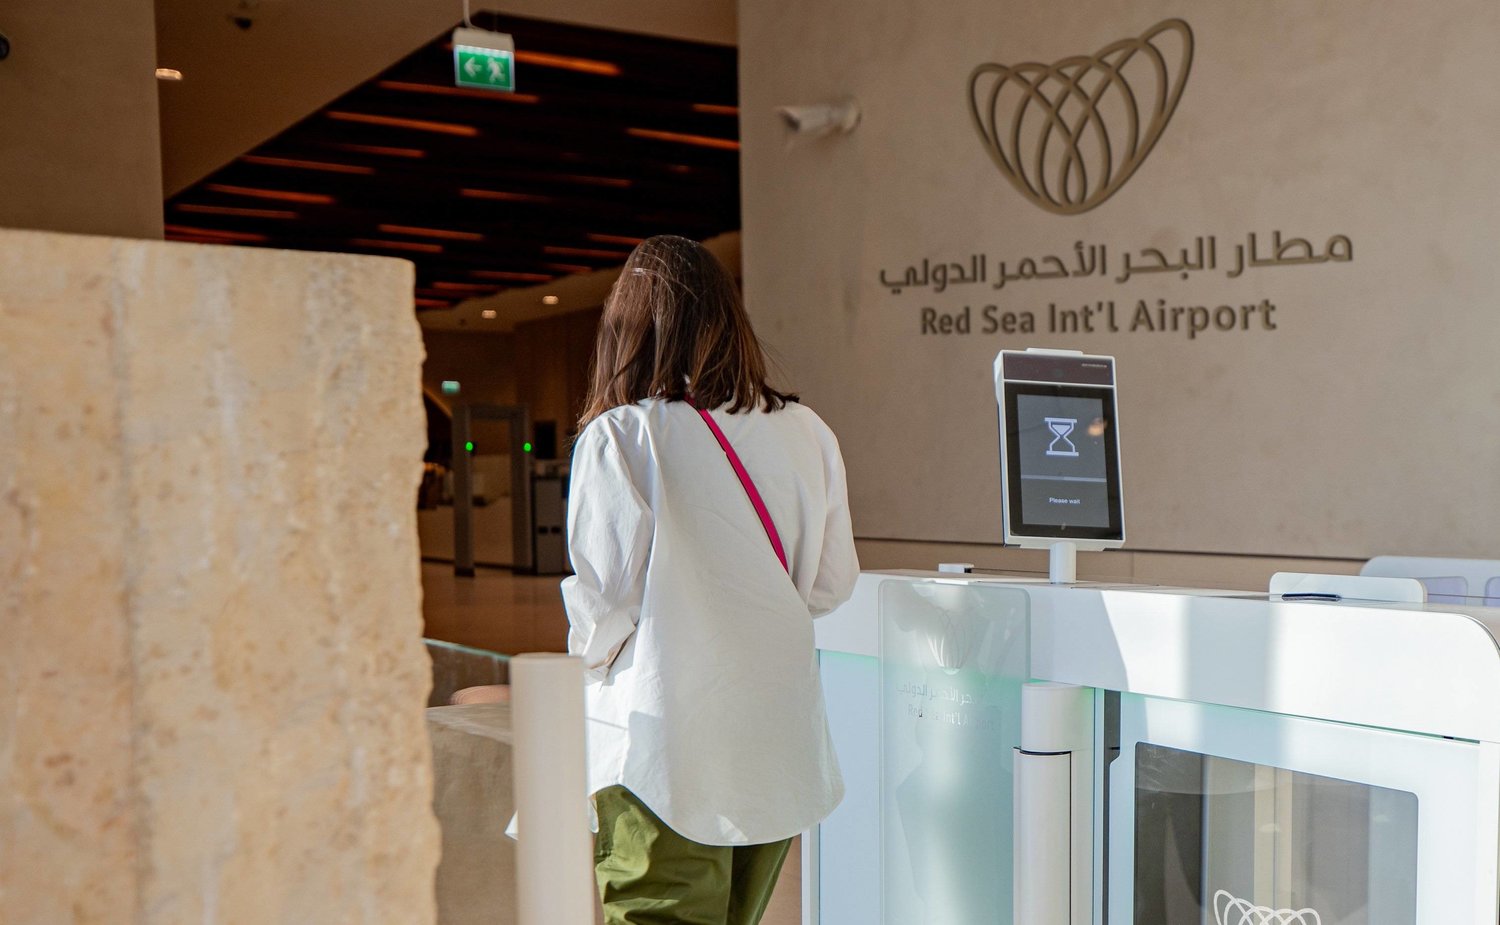 تزامن إعلان الرحلة الأولى مع بدء الكشف عن العلامة التجارية الخاصة بالمطار (الشرق الأوسط)